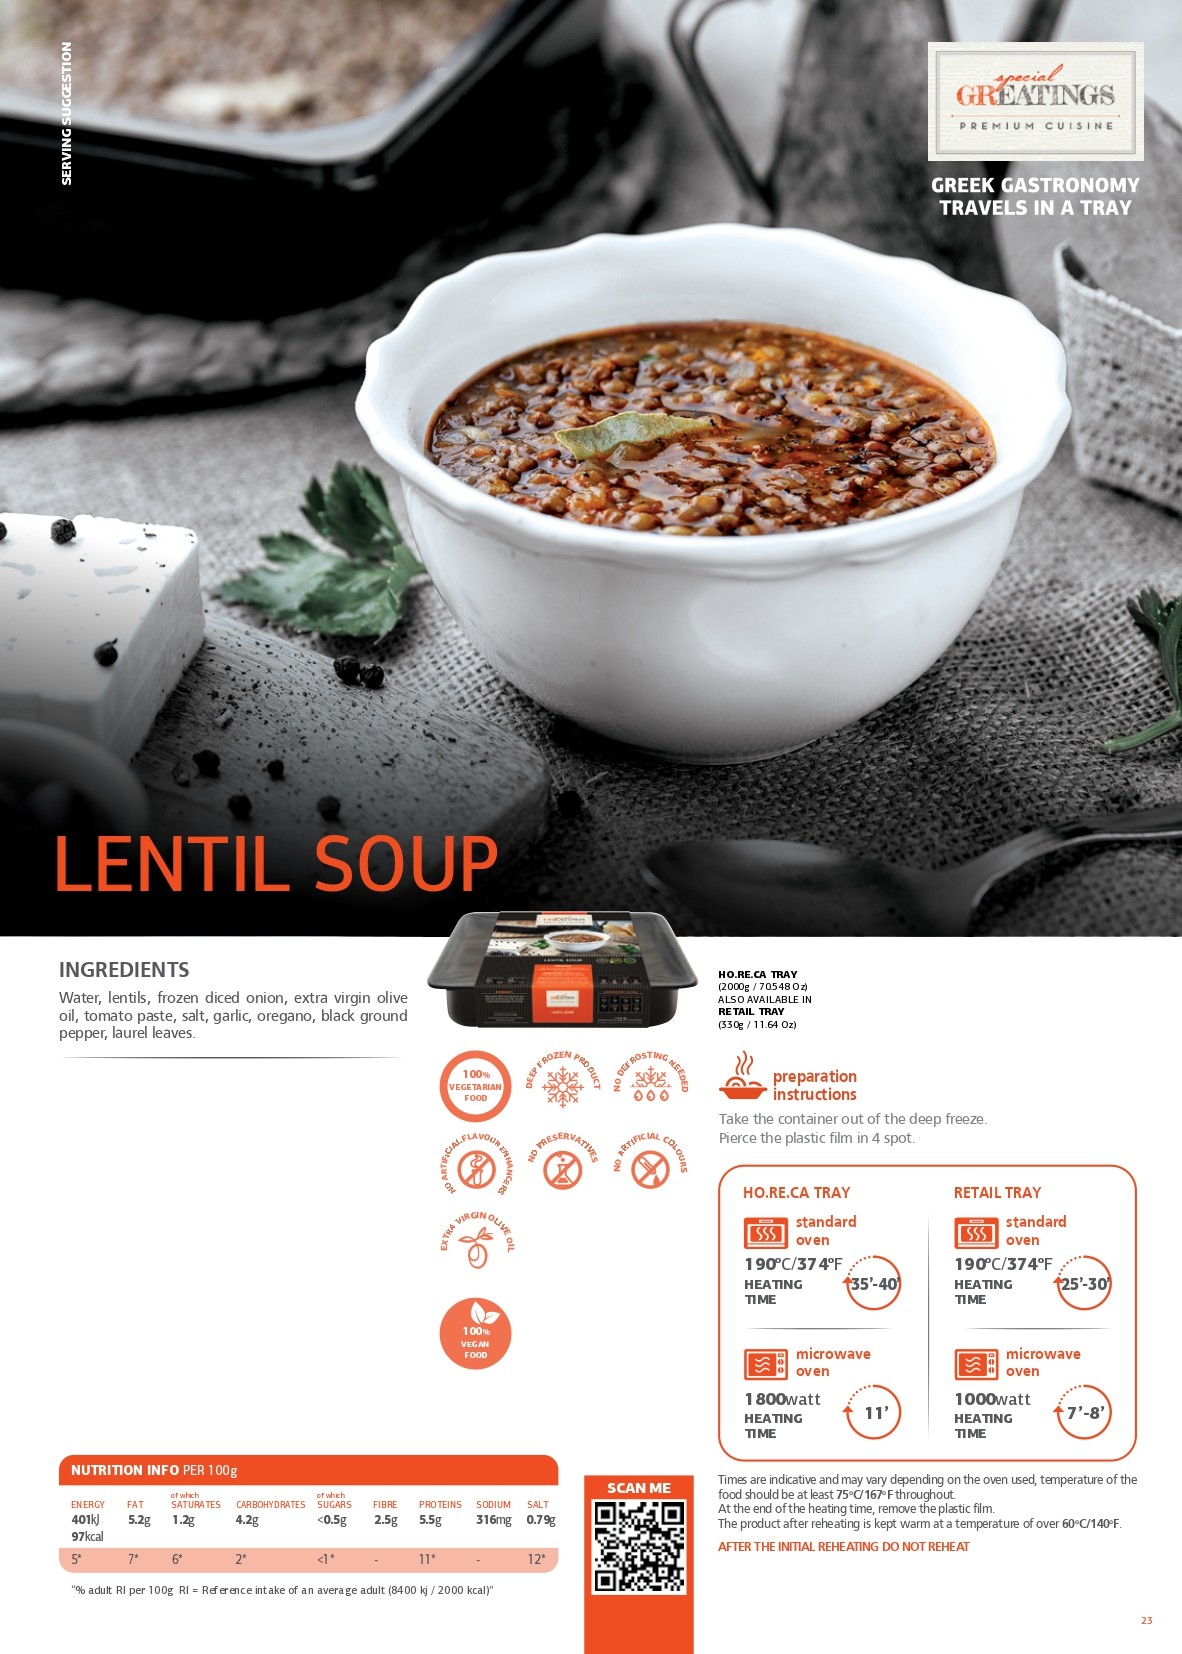 Lentil soup pdf image